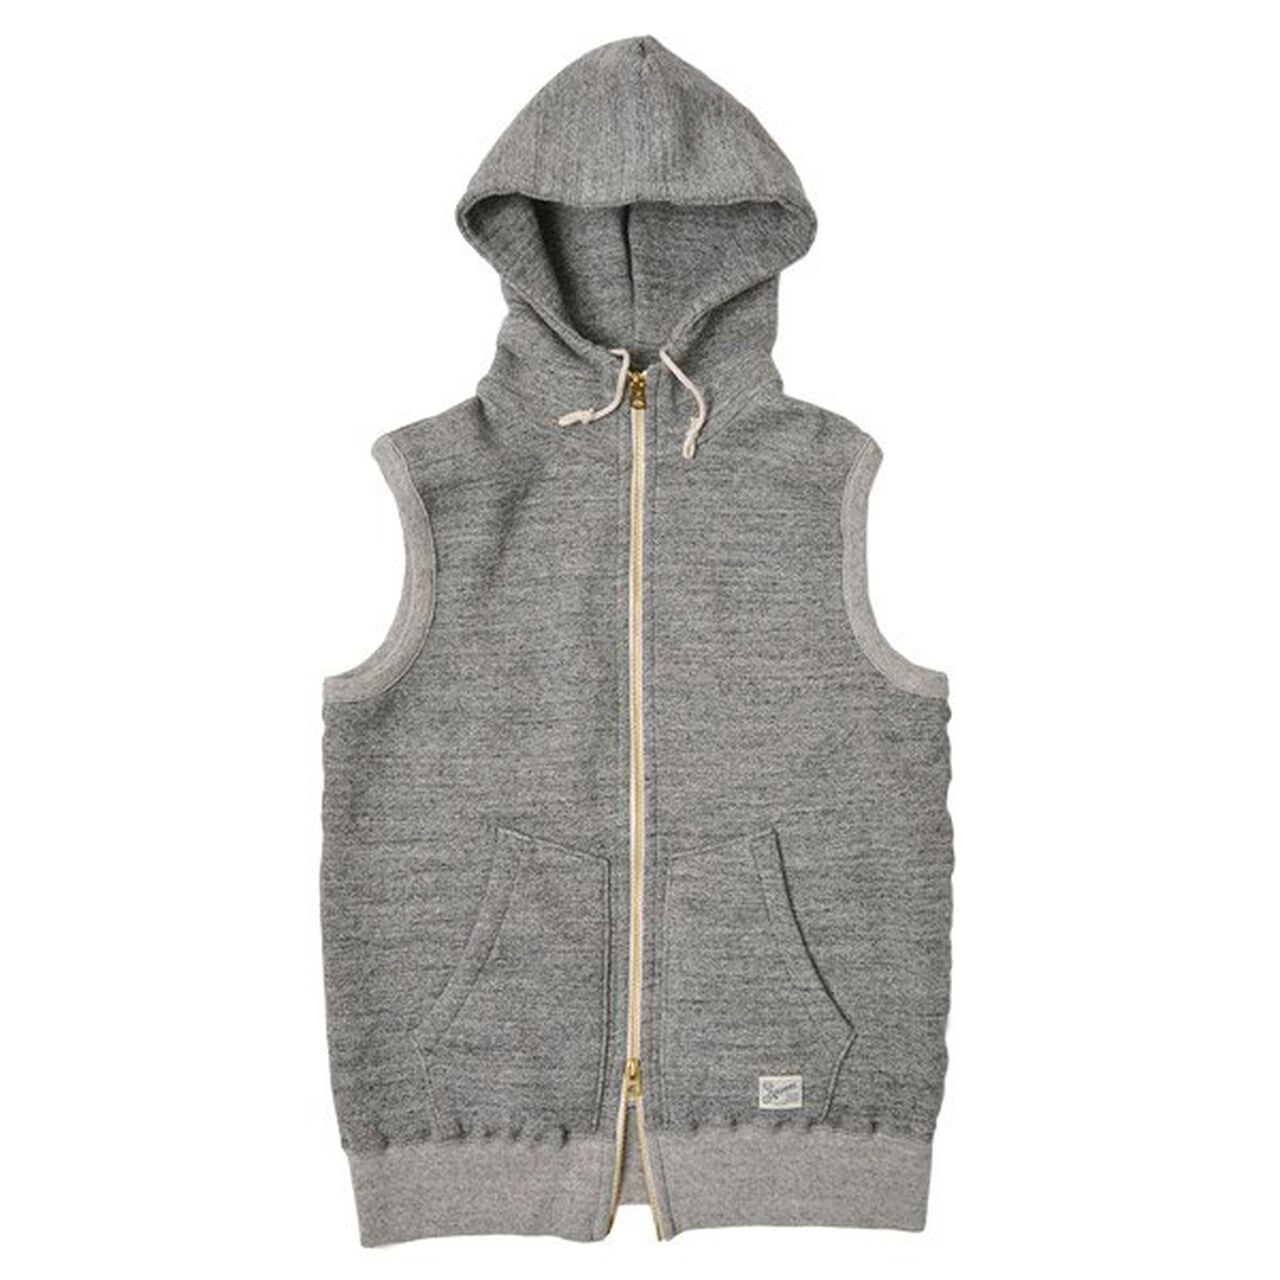 Brooklyn / Hooded Sweatshirt Vest,Grey, large image number 0